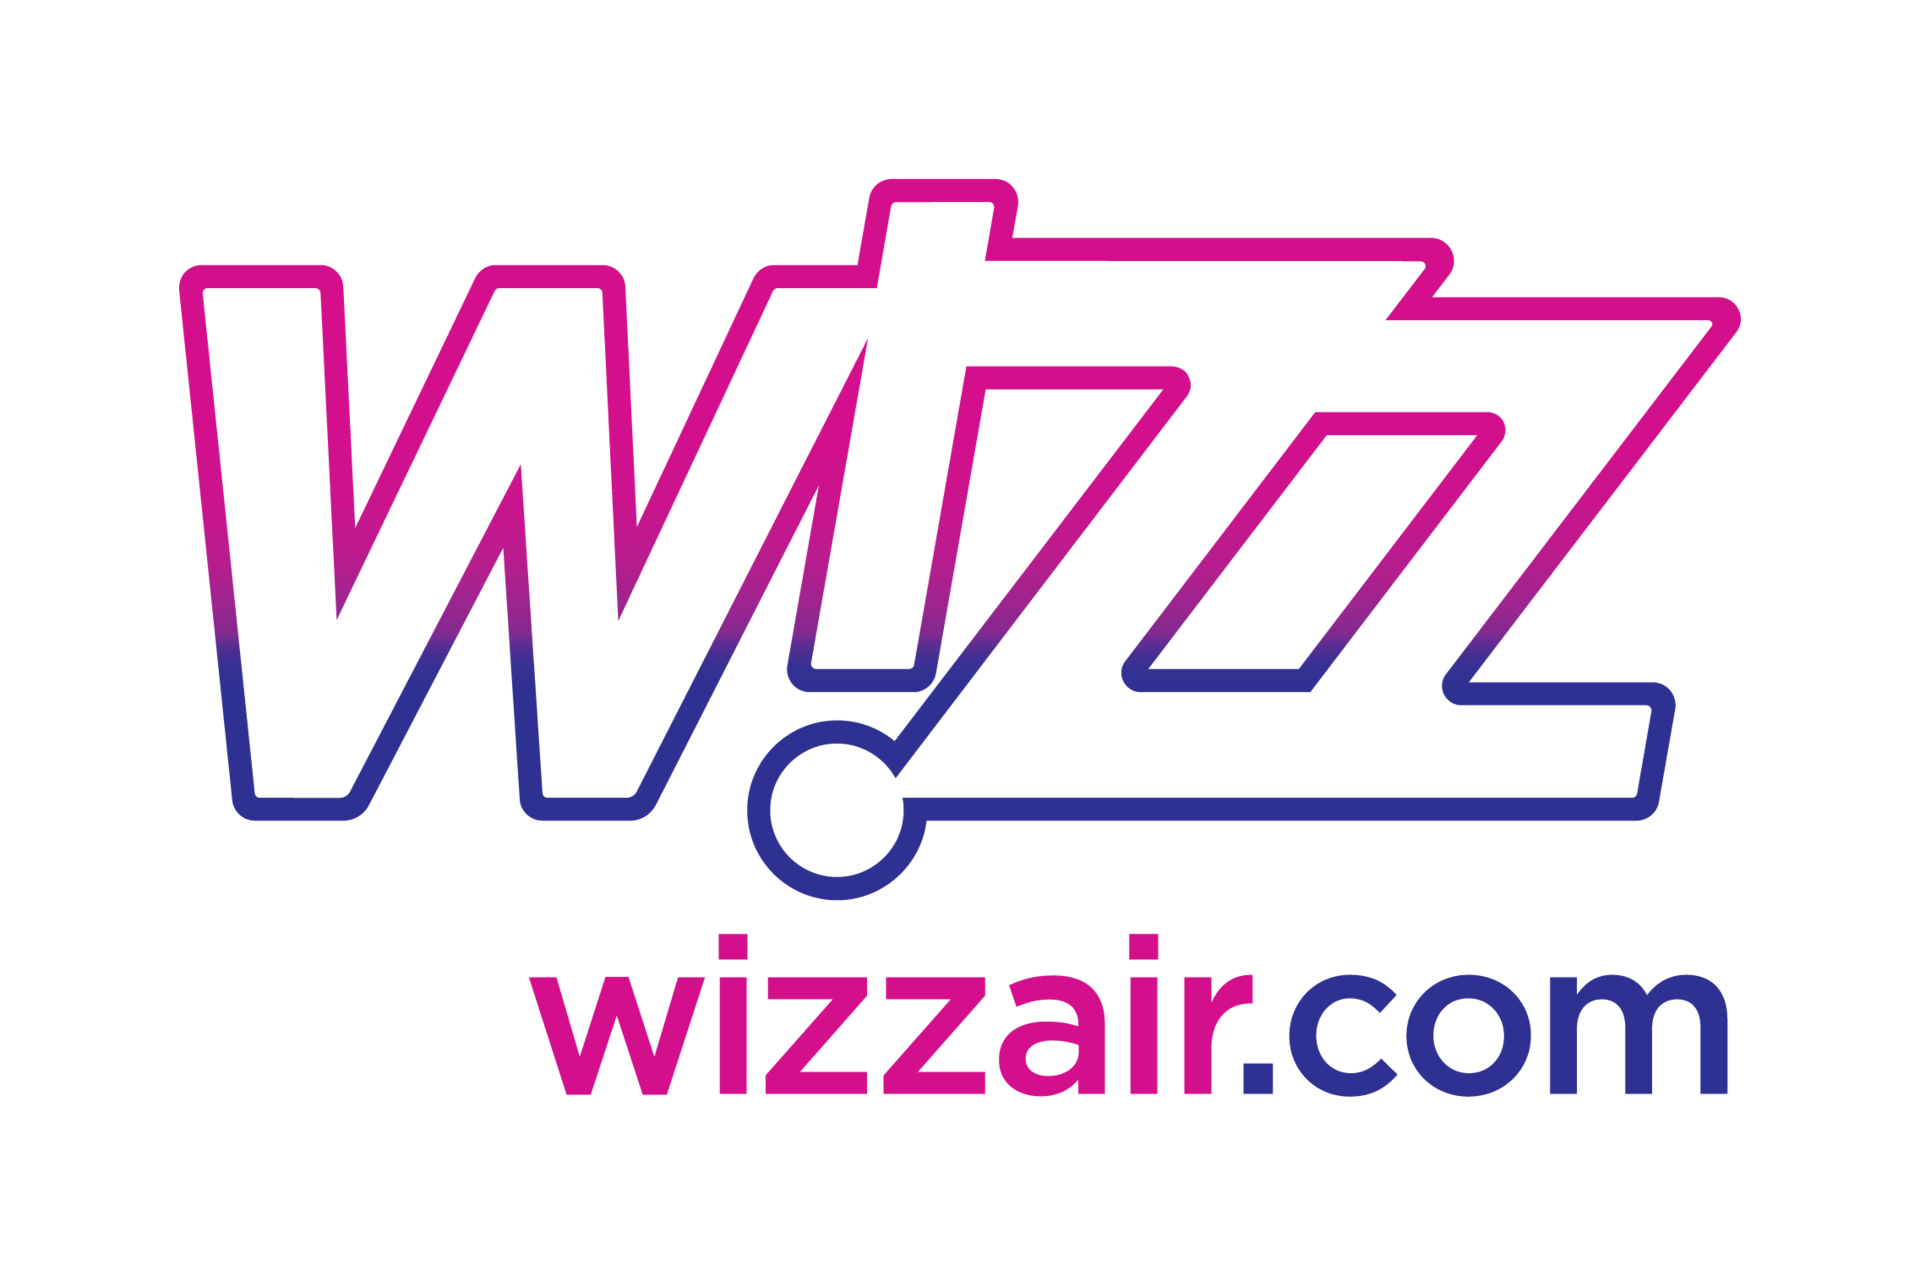 Wizz лого. Wizz Air logo. Авиакомпании значки Wizz Air. Wizzair logo прозрачный. Travelask com